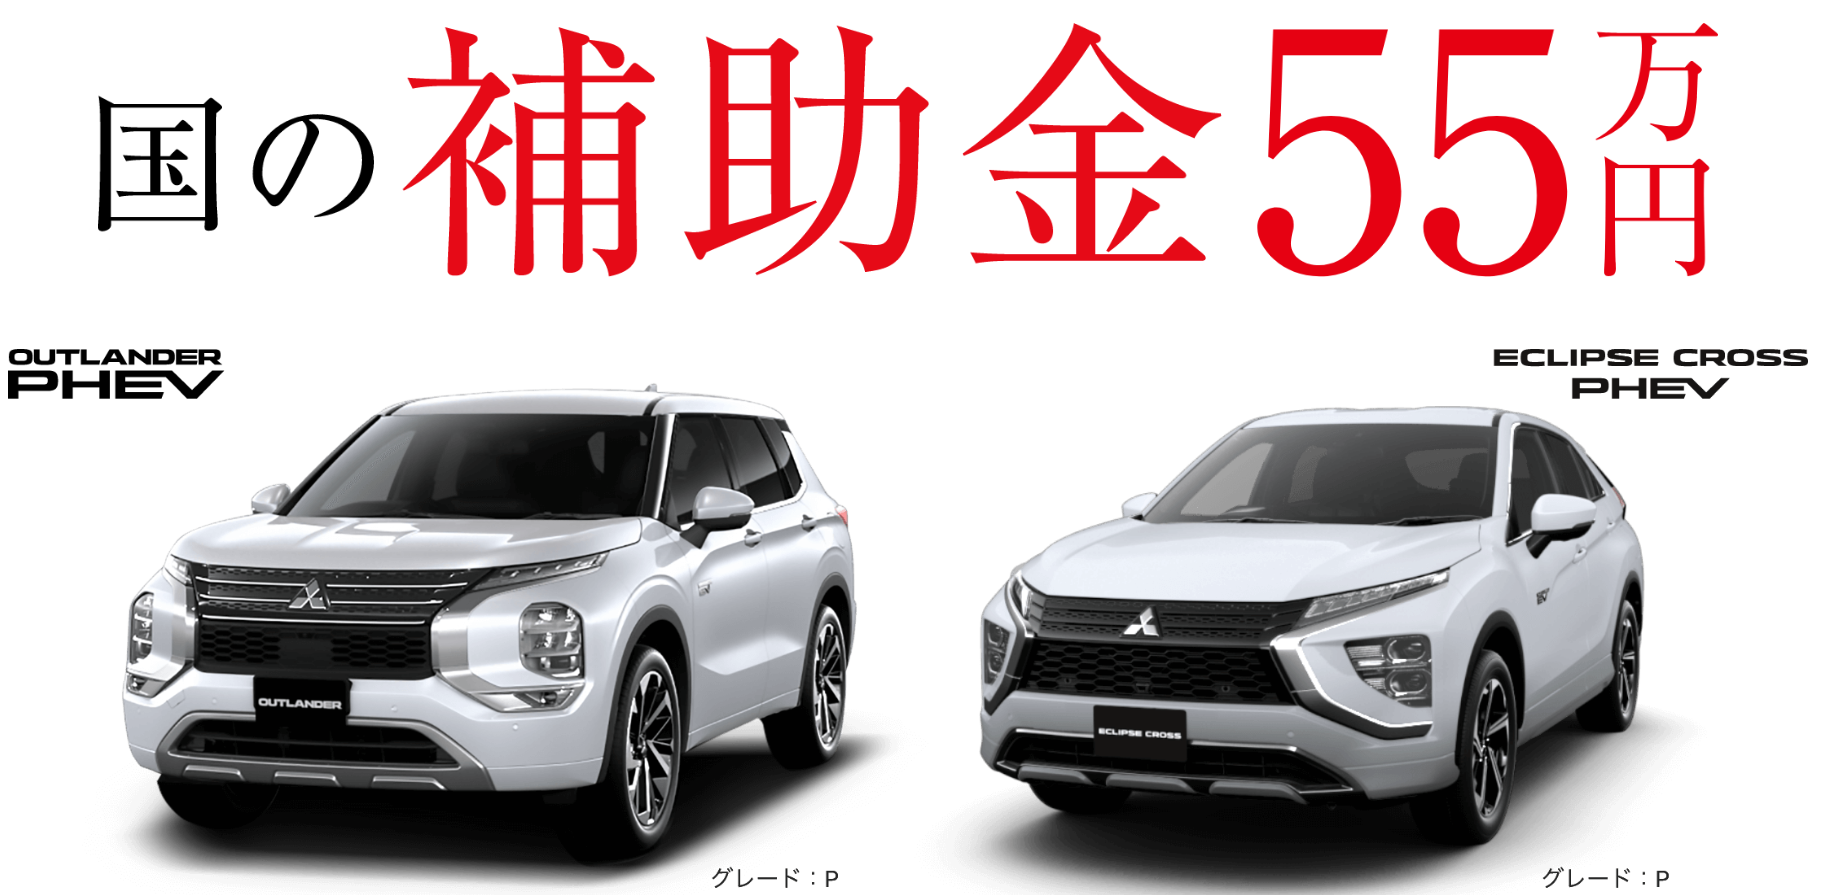 安心全国納車 サポートの墨田三菱自動車販売 ナリヒラ自動車グループ